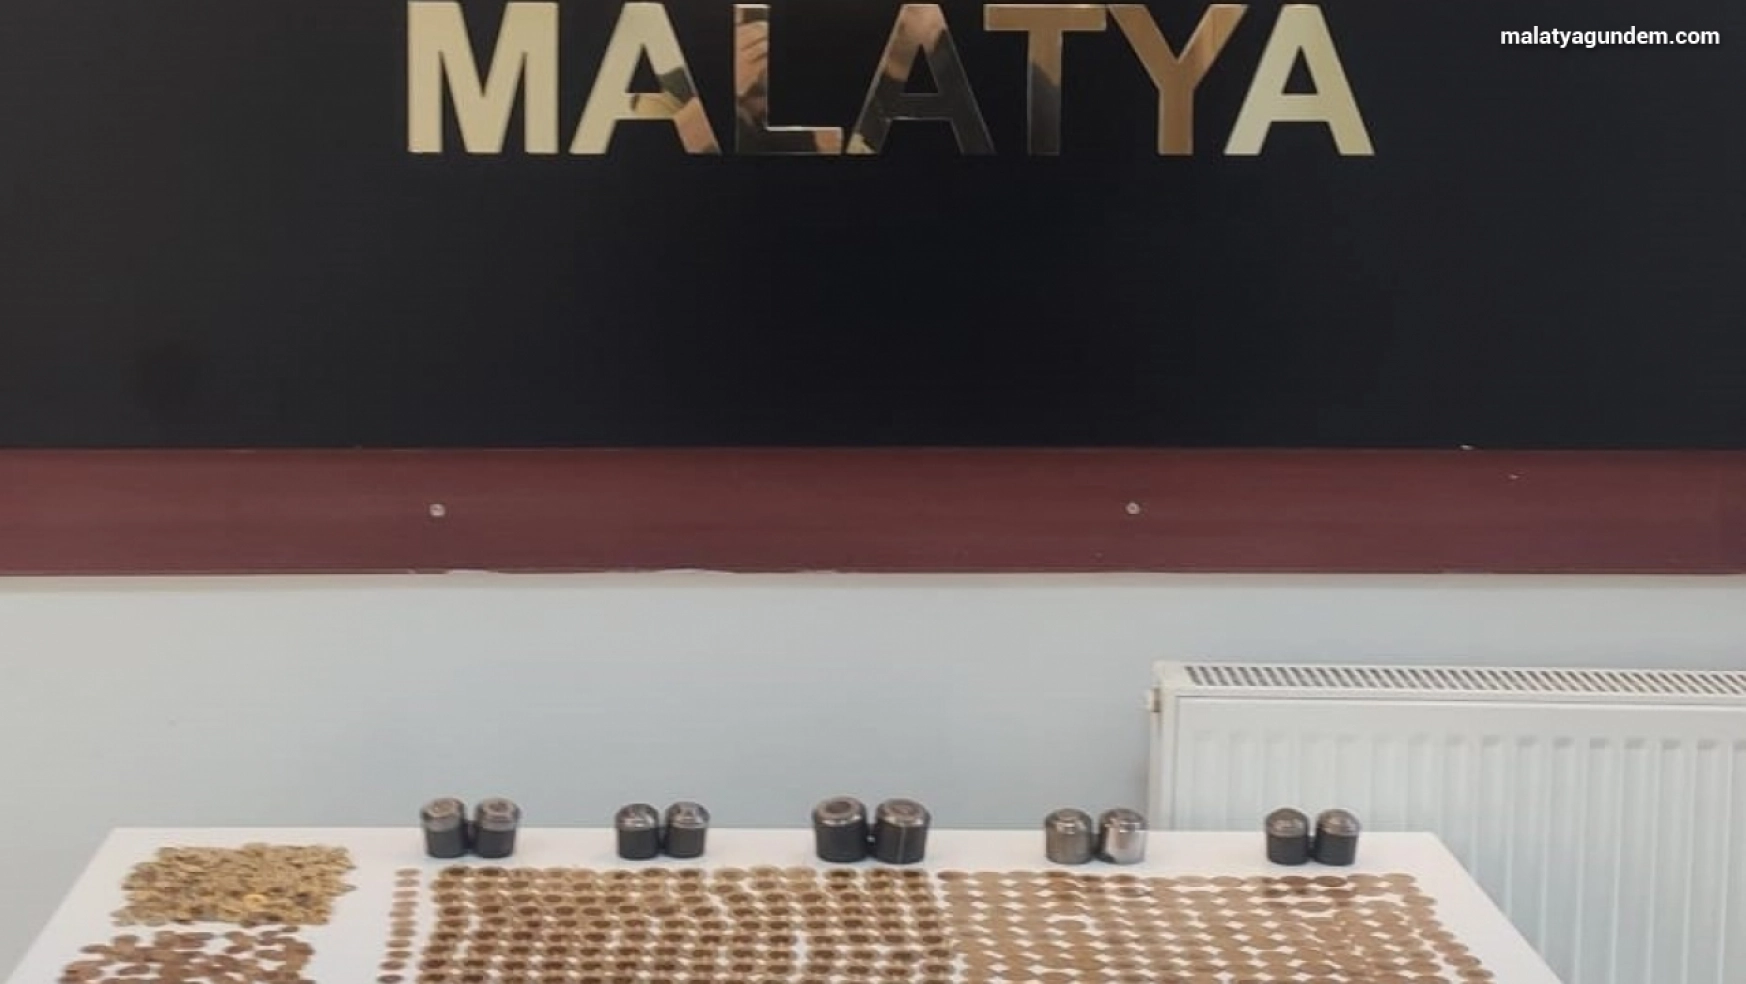 Malatya'da sahte altın operasyonu: 3 tutuklama